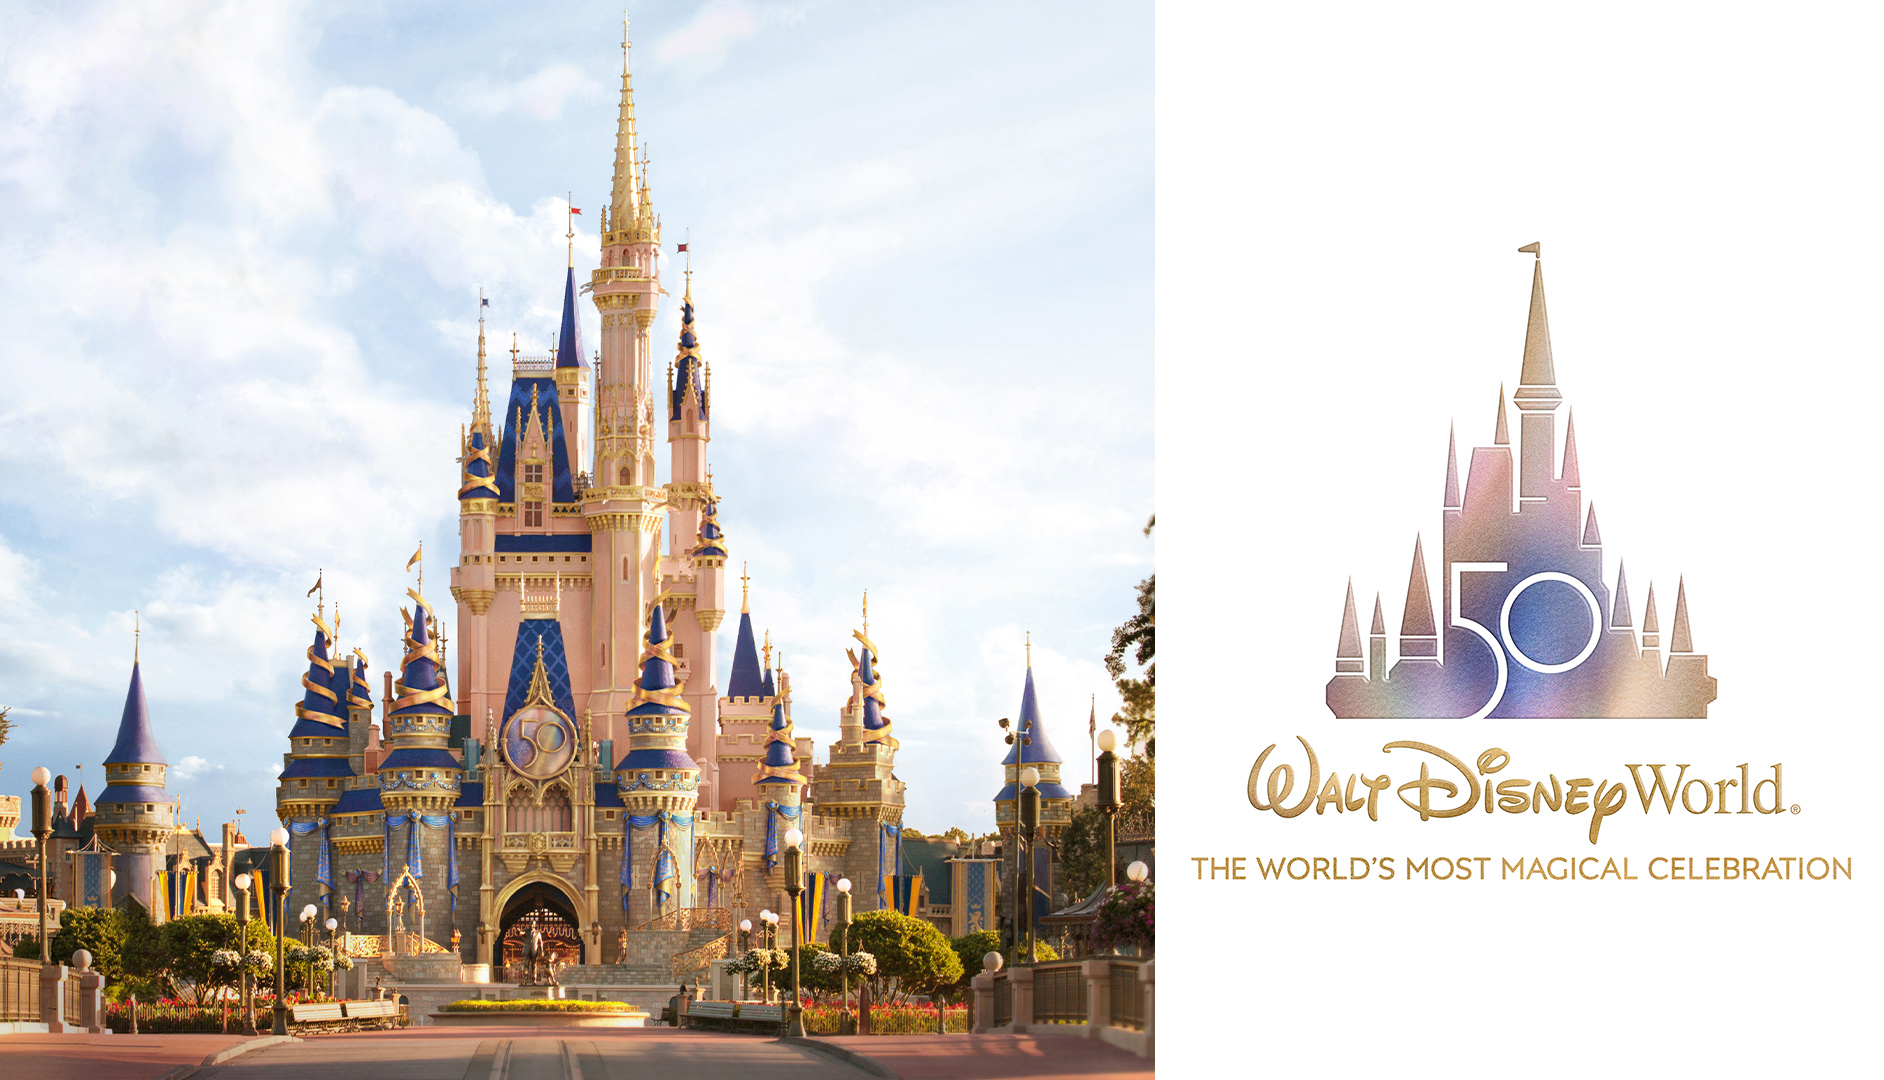 ¡Se viene el súper festejo de Disney World por sus 50 años!